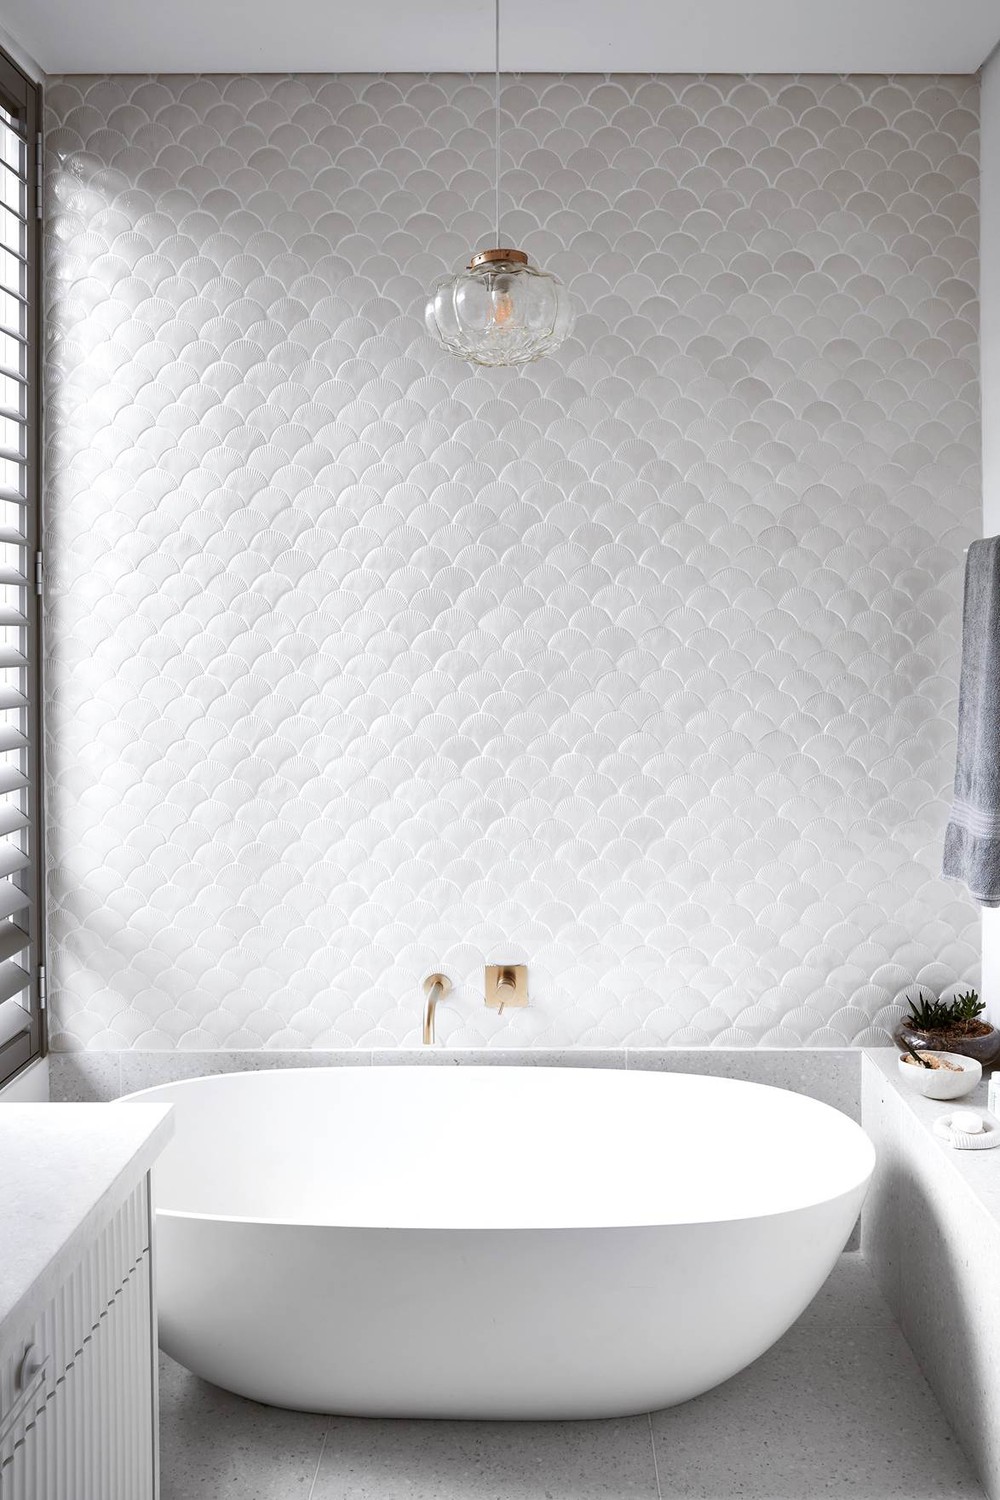 Phòng tắm gia đình thư thái như tại spa nhờ thiết kế sắc trắng chủ đạo - Ảnh 3.